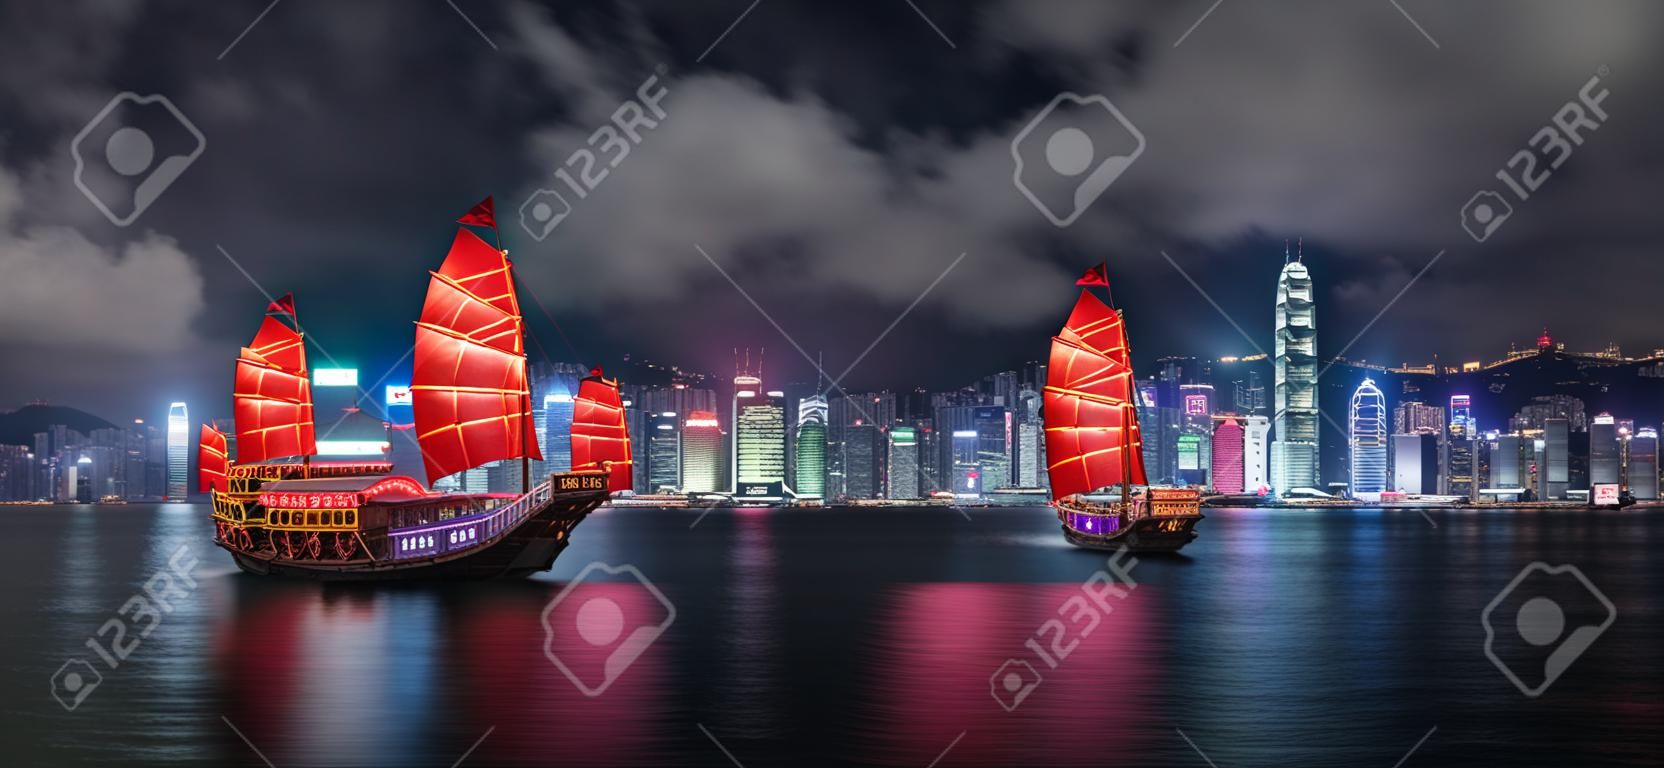 Basura turística cruzando el puerto de victoria en hong kong